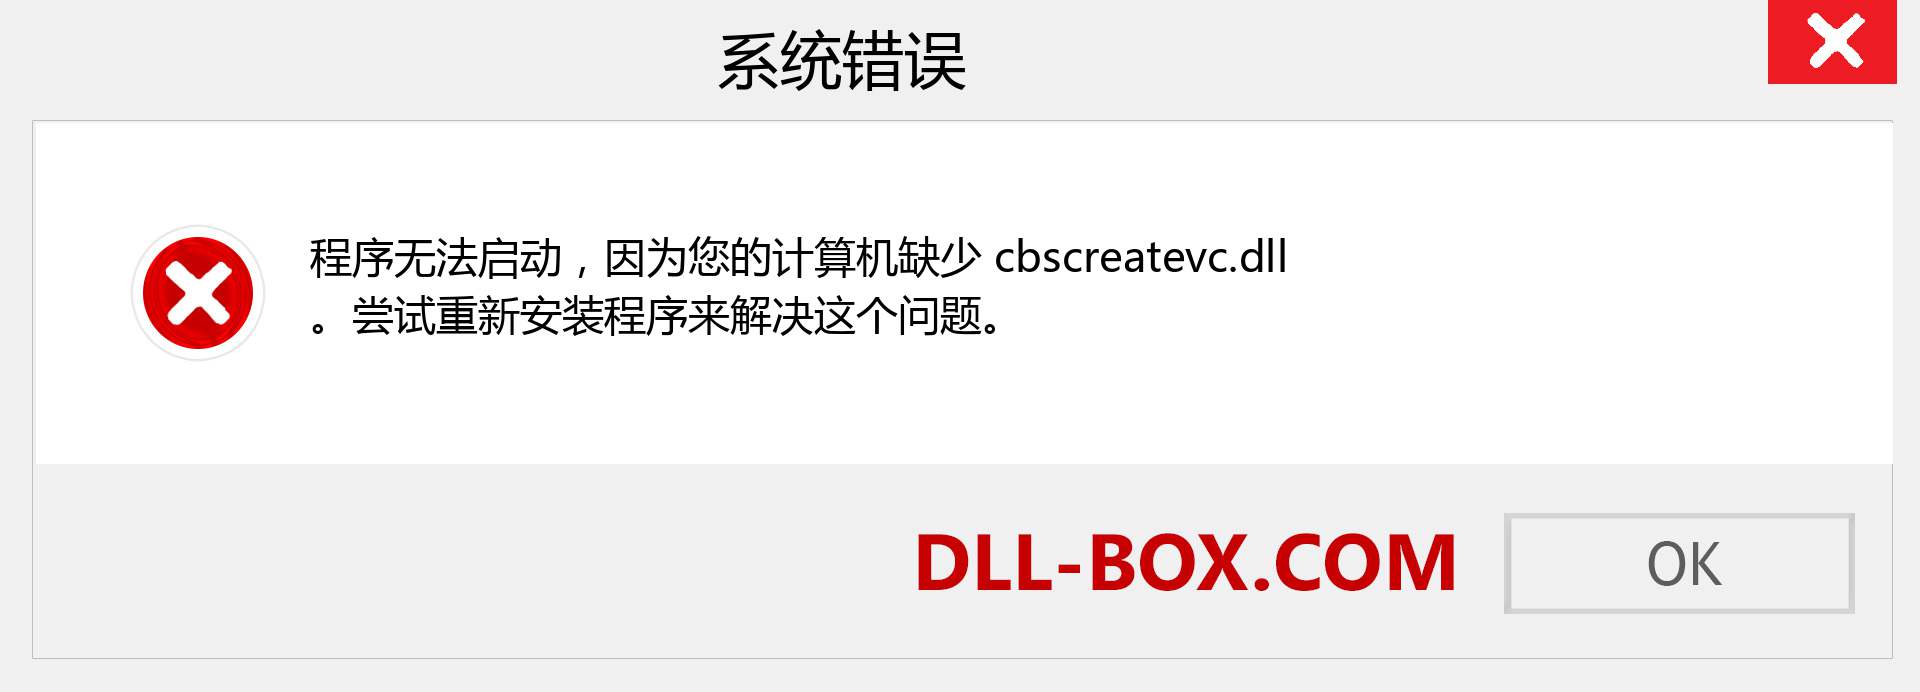 cbscreatevc.dll 文件丢失？。 适用于 Windows 7、8、10 的下载 - 修复 Windows、照片、图像上的 cbscreatevc dll 丢失错误